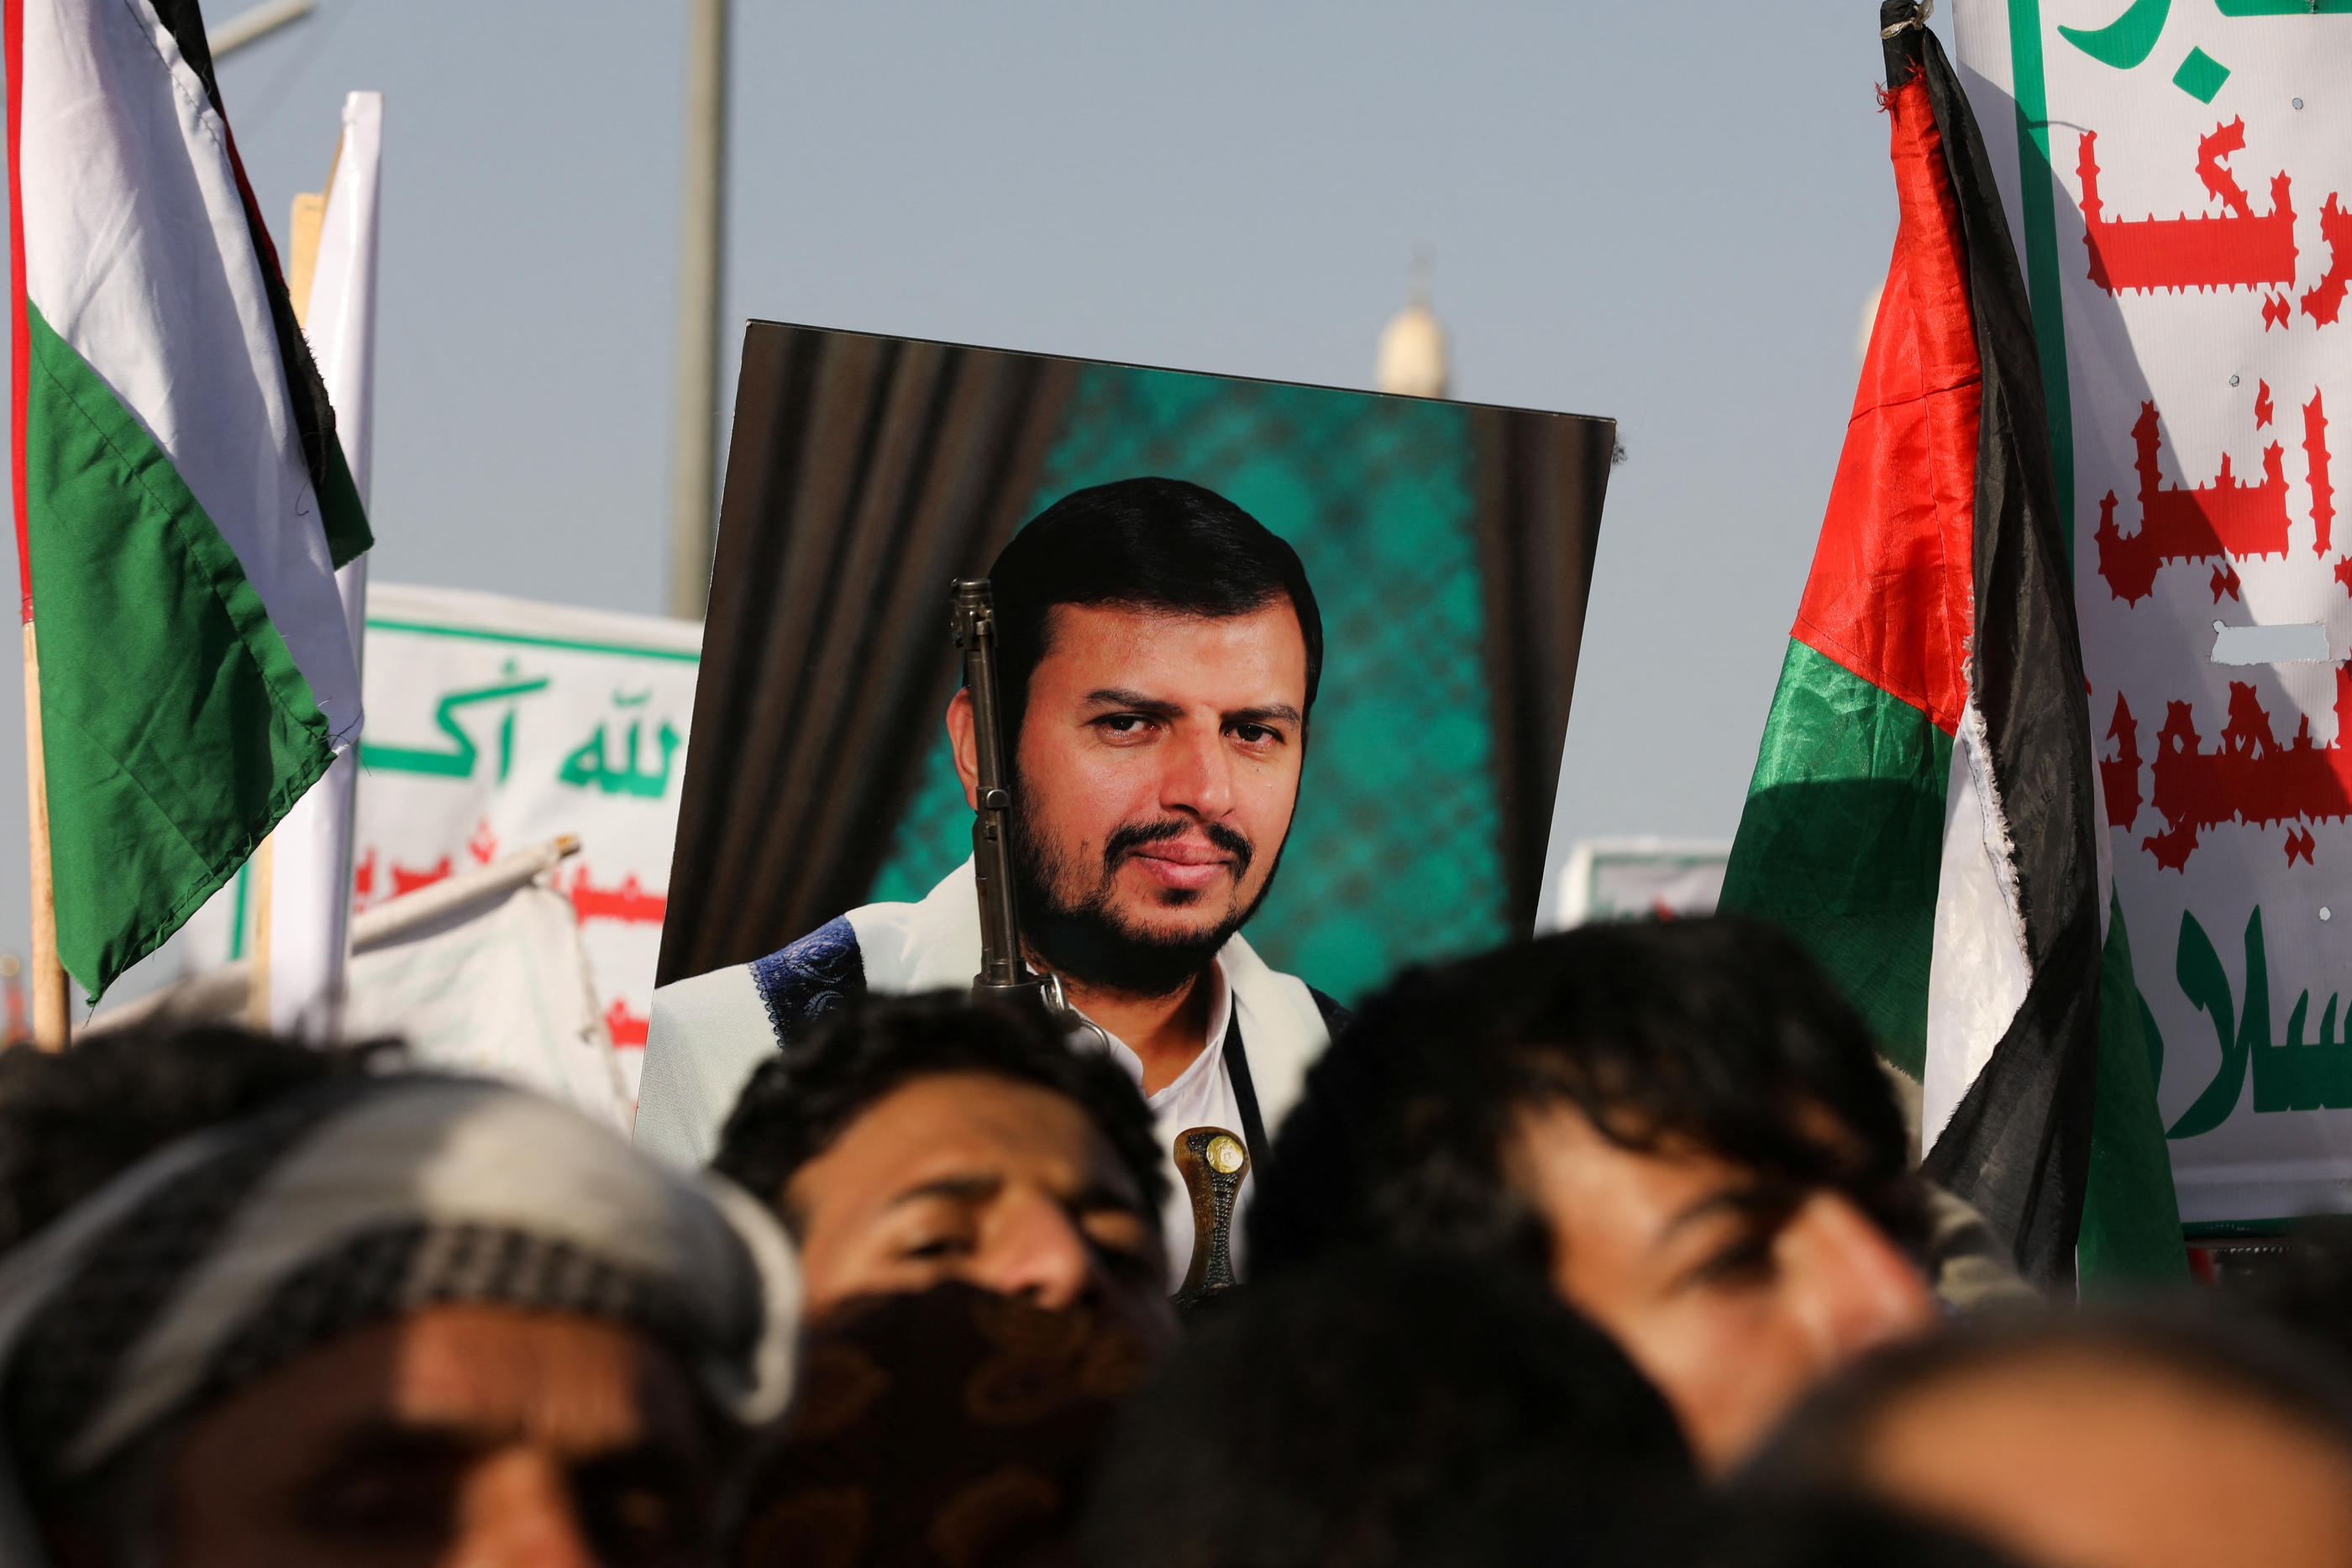 Le chef religieux des Houthis, Abdul-Malik al-Houthi (sur la pancarte), est le frère du fondateur du mouvement, décédé en 2004. REUTERS/Khaled Abdullah